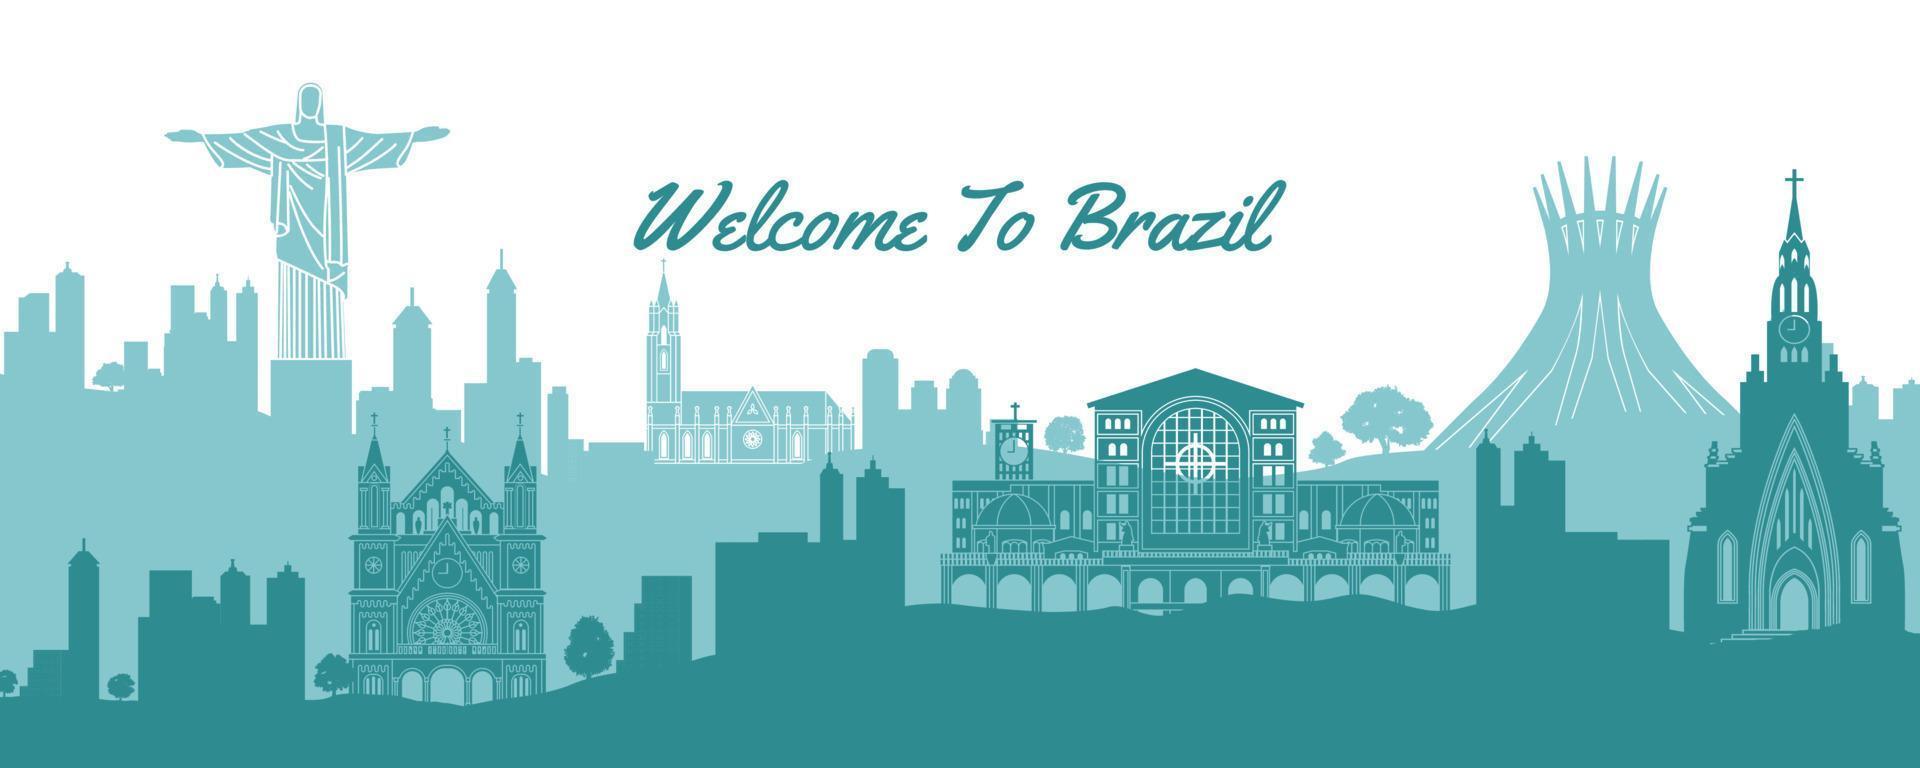 famoso punto de referencia de brasil, destino de viaje con silueta clásica con diseño de color nacional vector